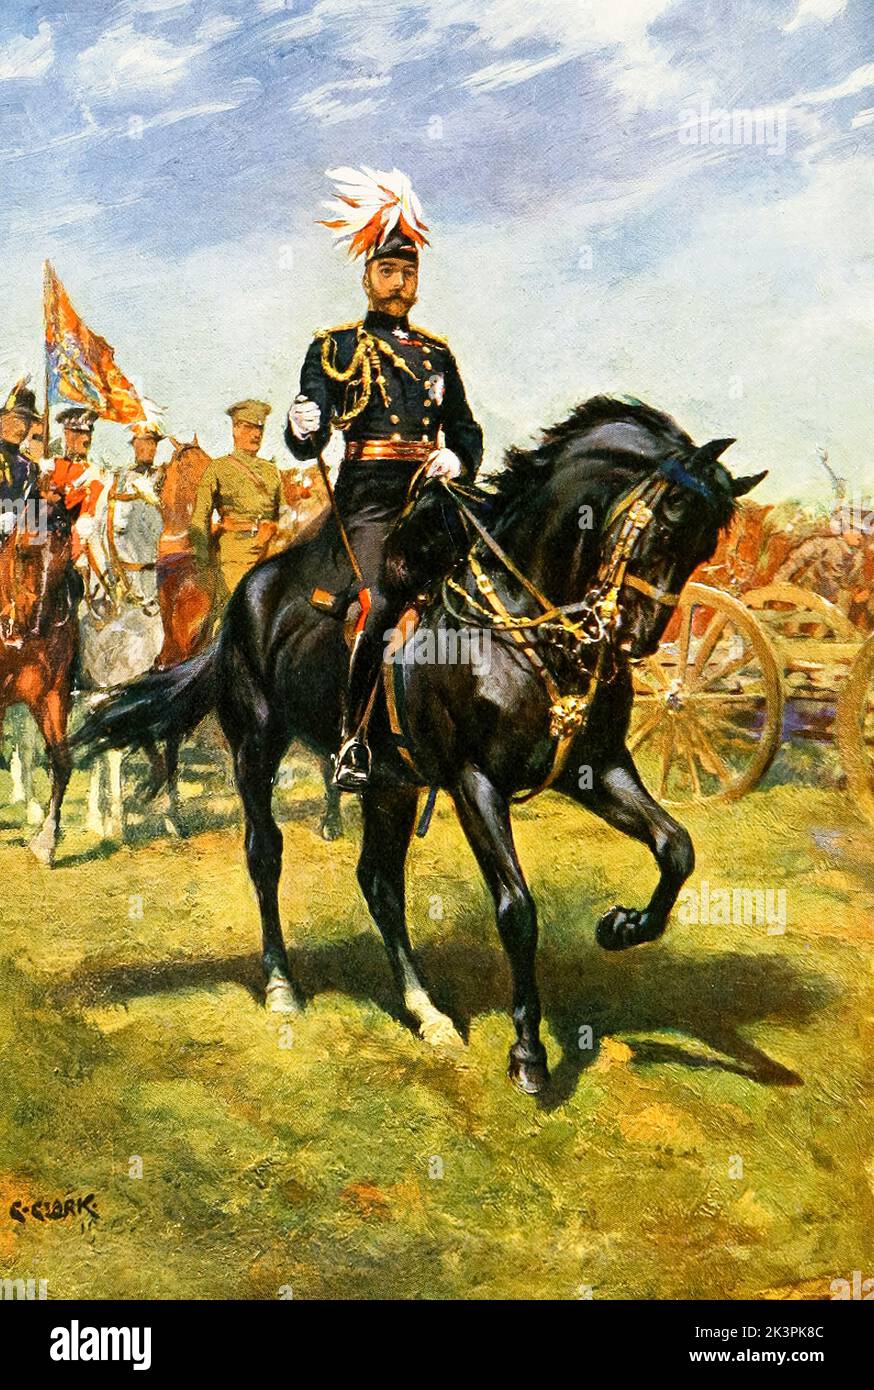 König George V. des Vereinigten Königreichs (1865-1936), Reign (1910-1936), zu Pferd, Reiterportrait Illustration von Christopher Clark, 1911 Stockfoto